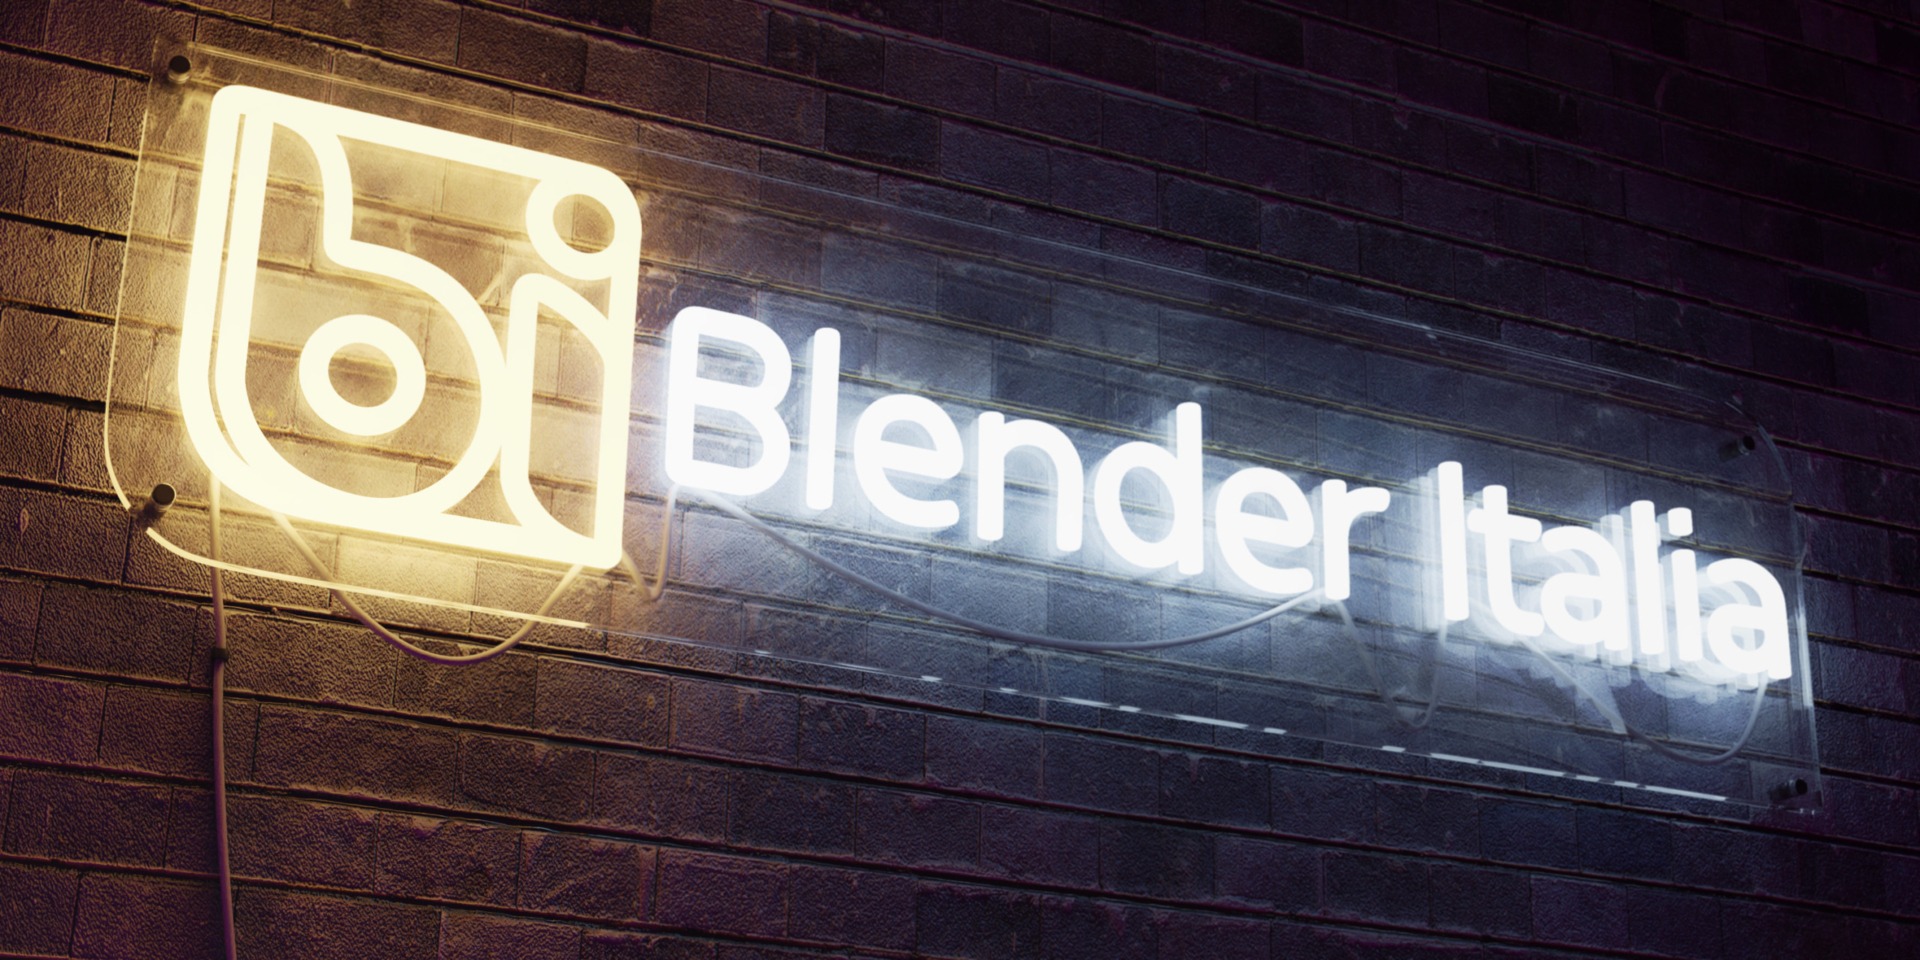 blender-italia-2